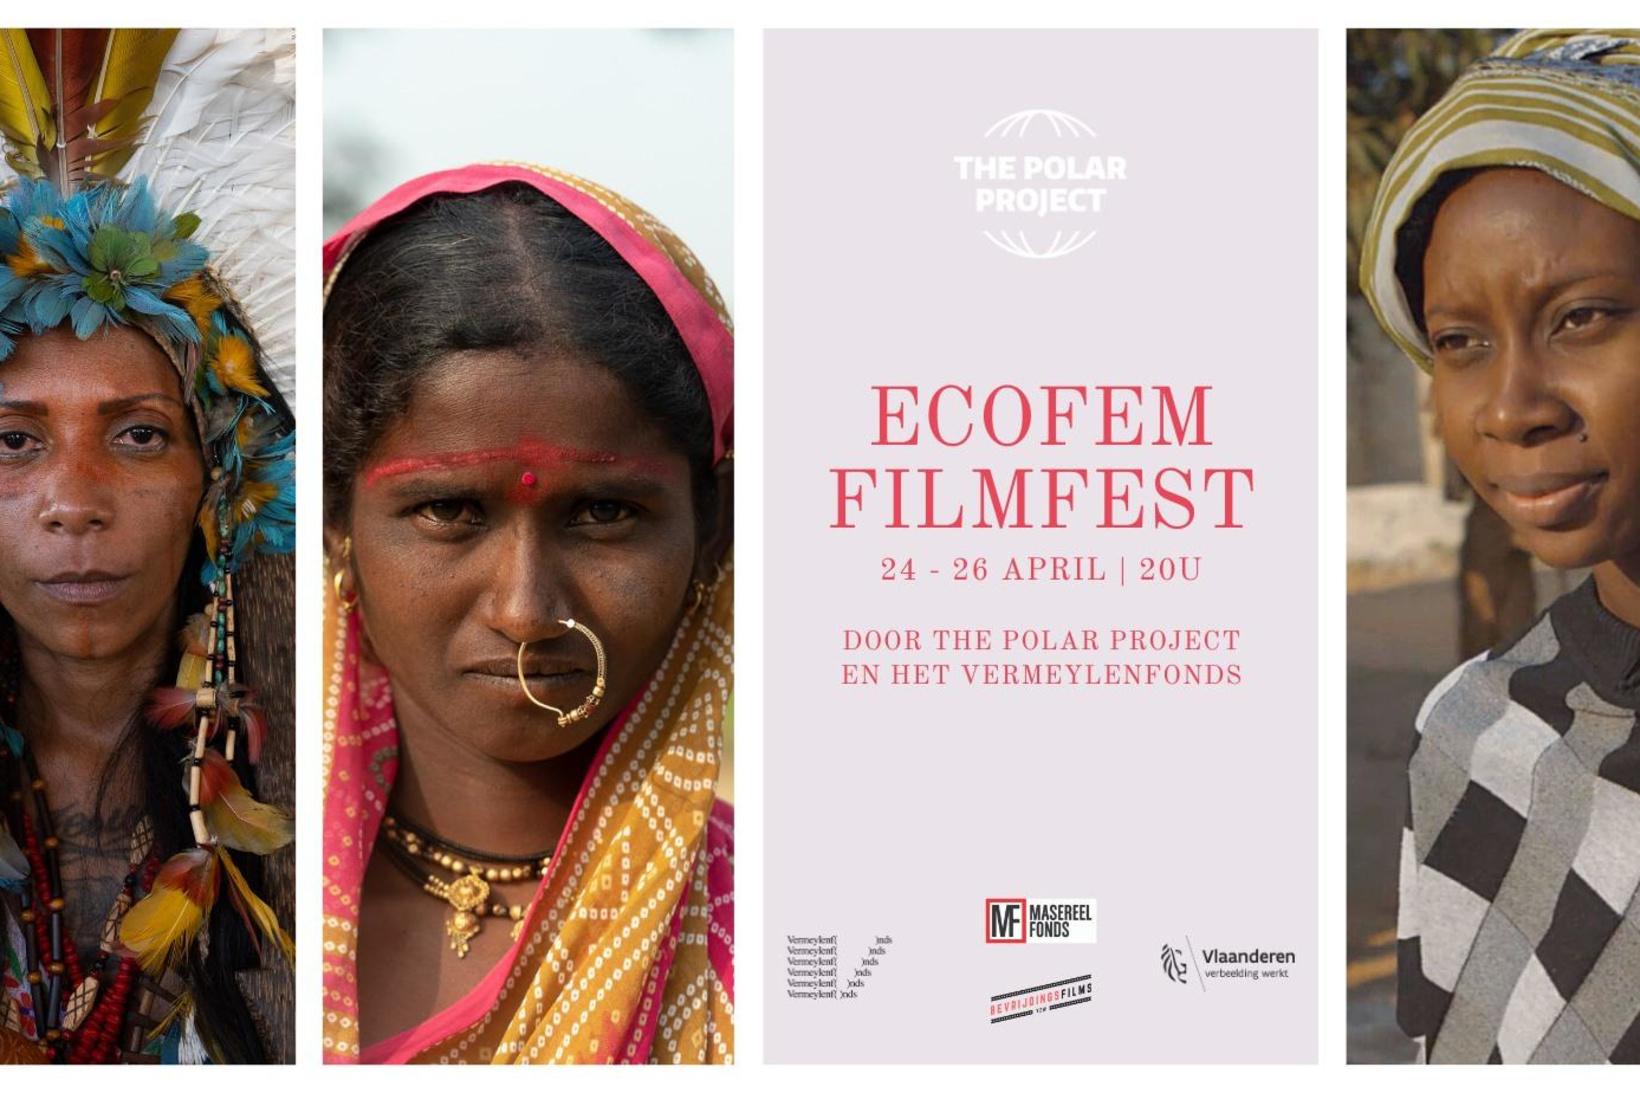 Ecofem Filmfest